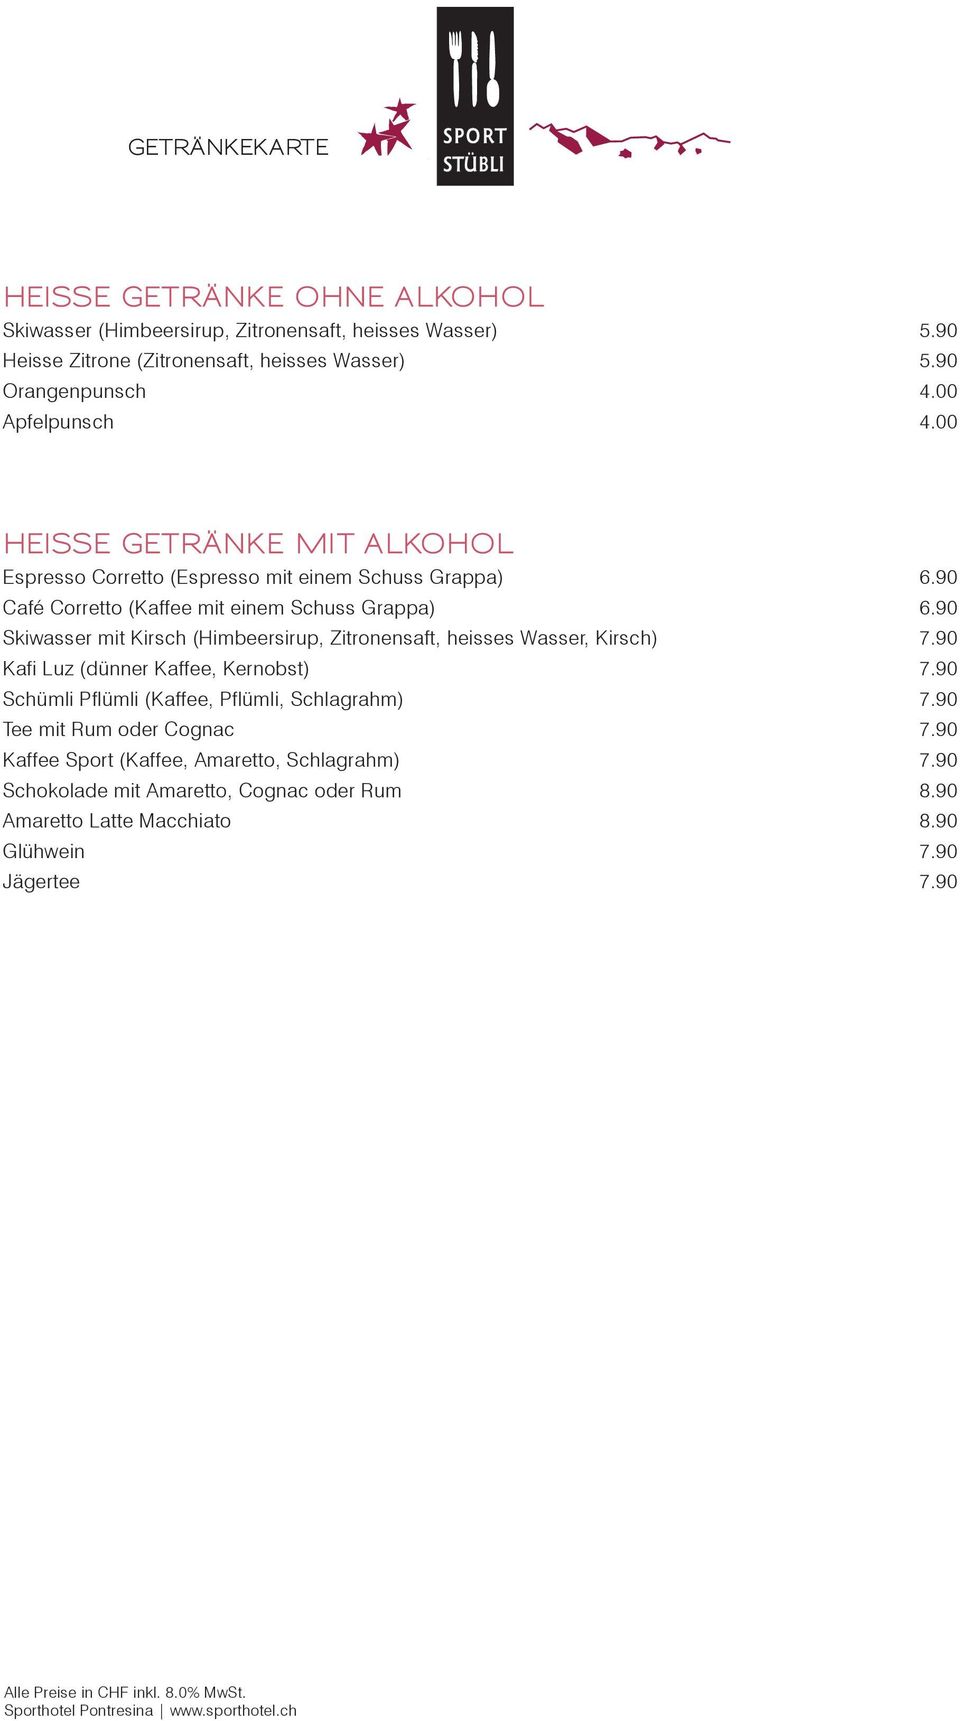 90 Skiwasser mit Kirsch (Himbeersirup, Zitronensaft, heisses Wasser, Kirsch) 7.90 Kafi Luz (dünner Kaffee, Kernobst) 7.